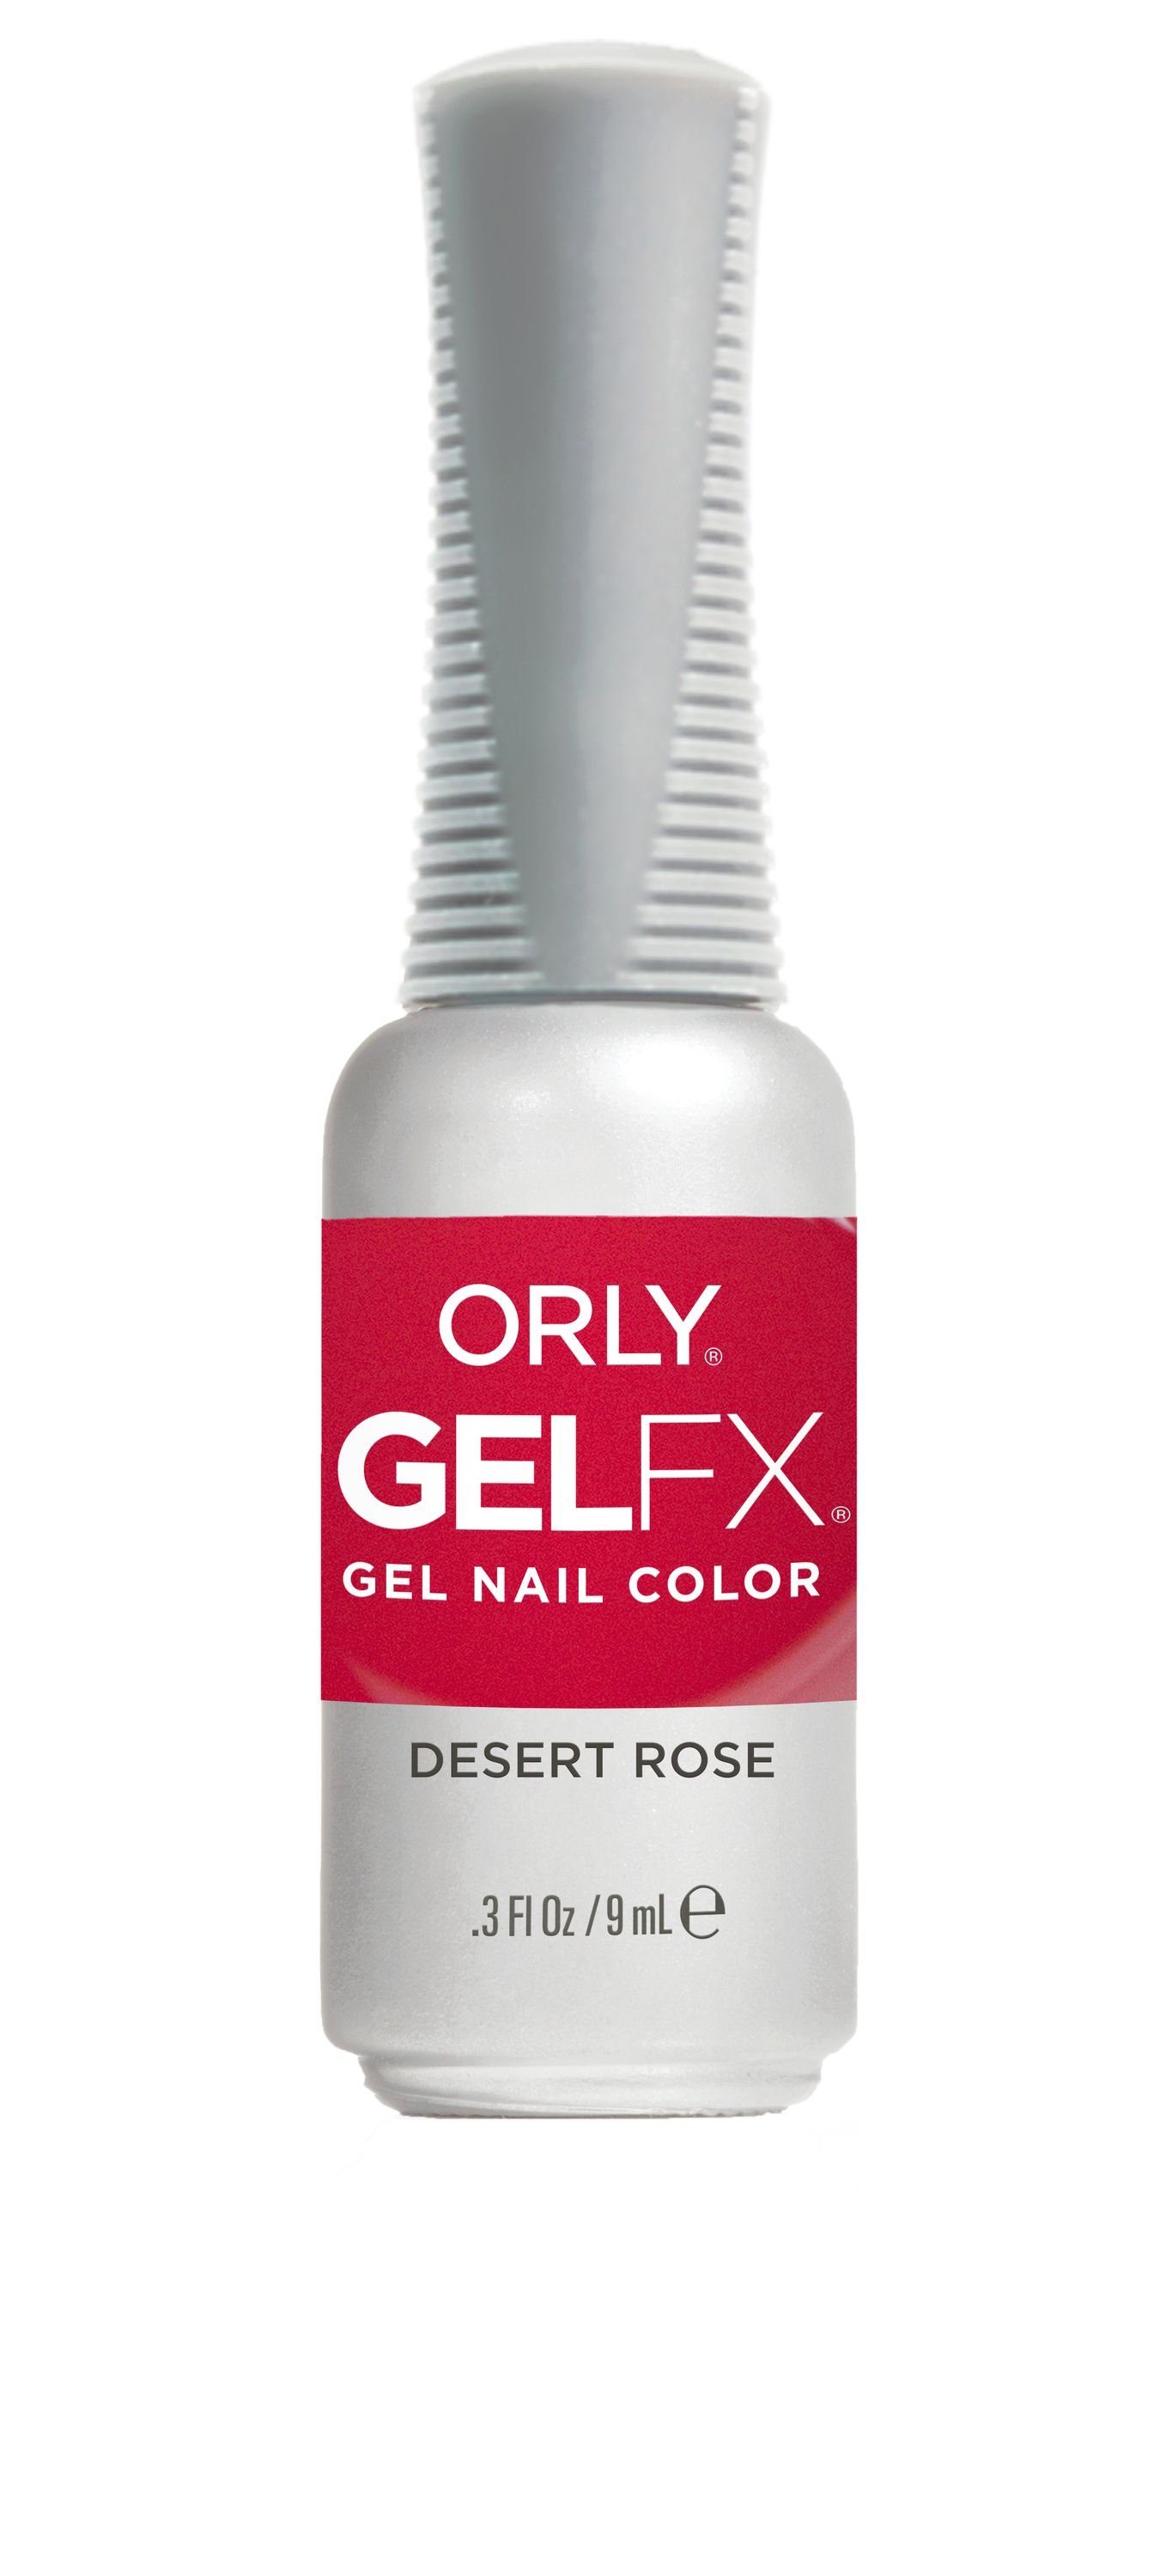 ORLY UV-Nagellack GEL FX Desert Rose, 9ML